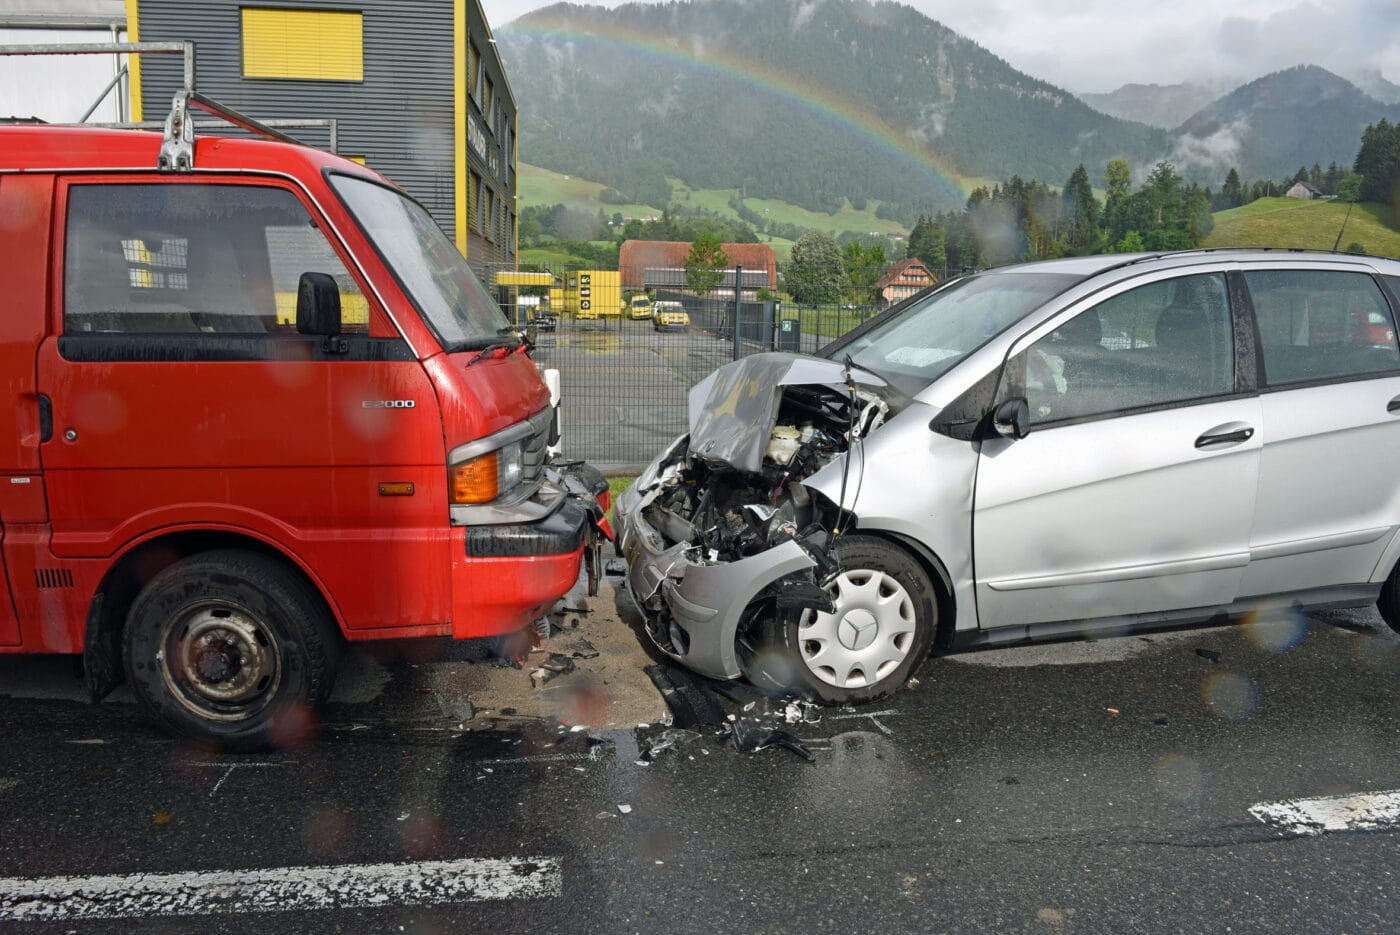 Kollision zwischen zwei Personenwagen – eine Person leicht verletzt